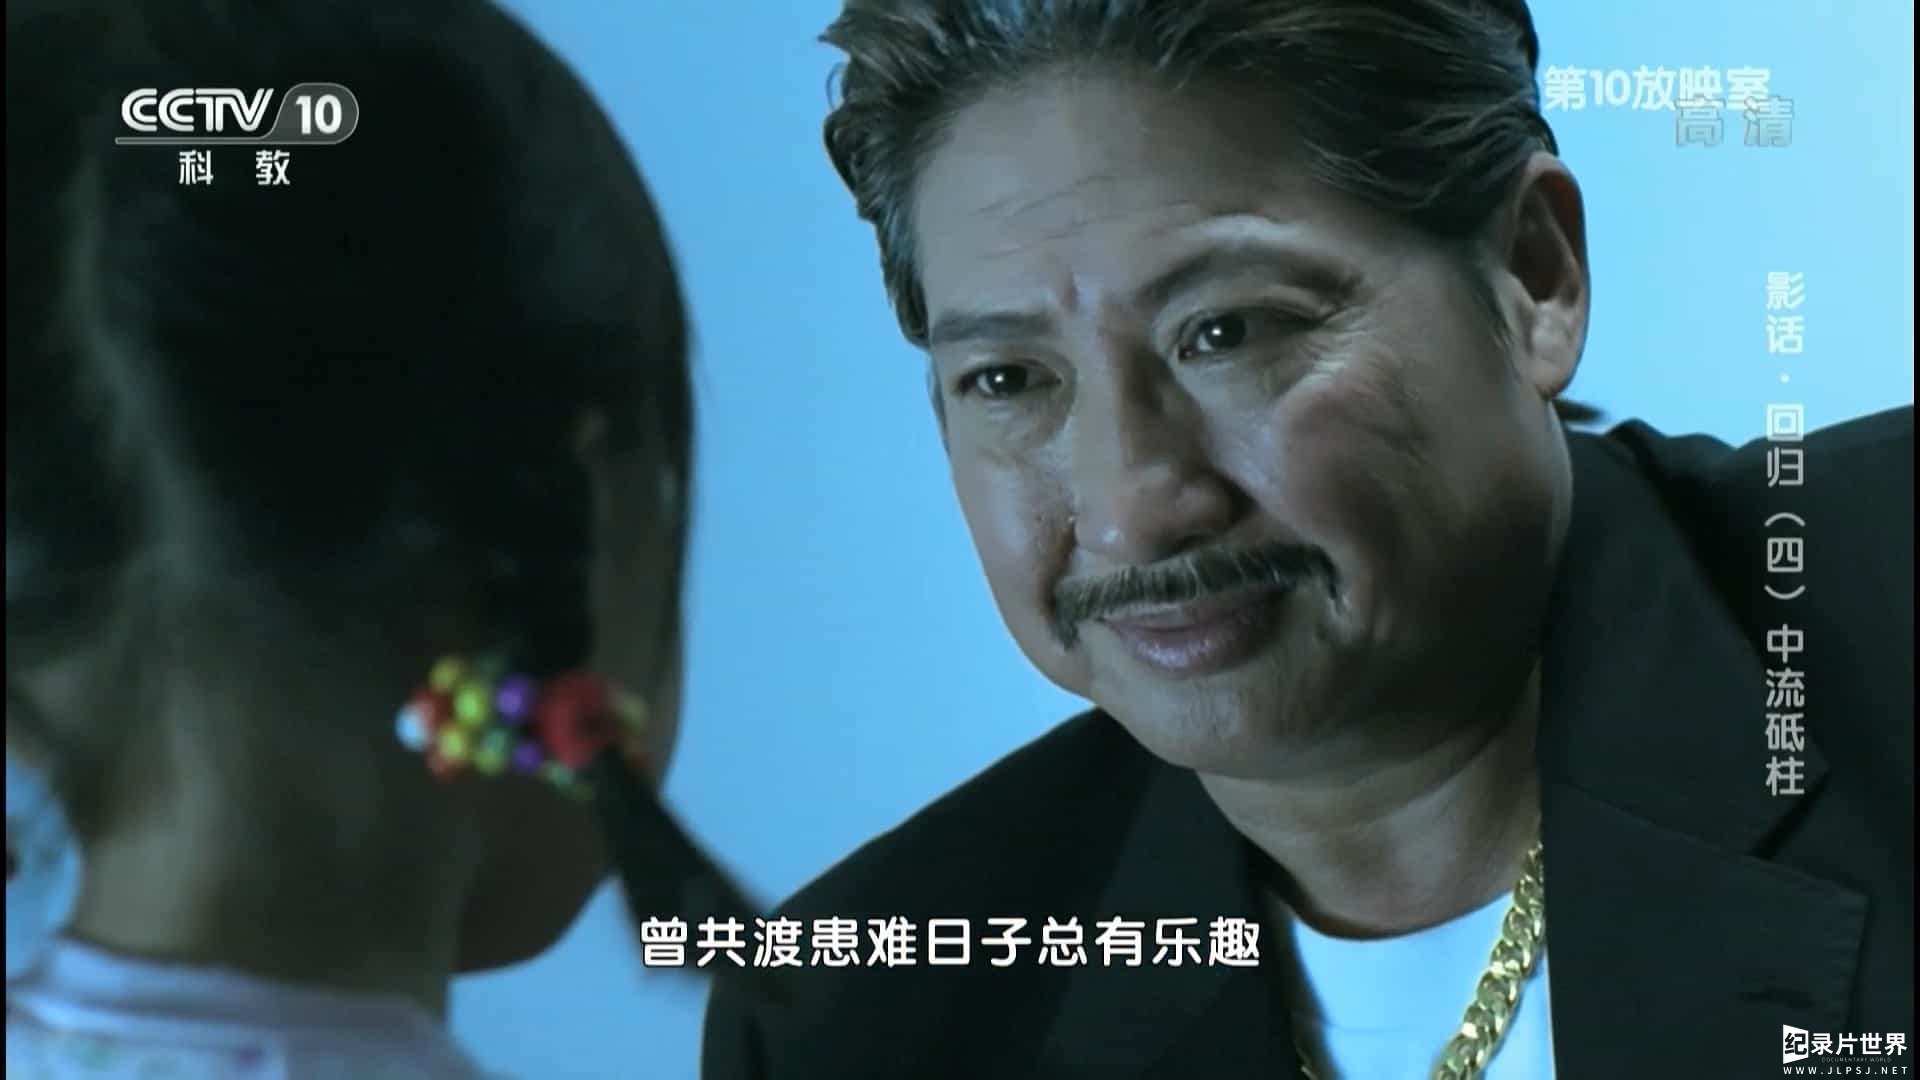  央视香港回归20周年特别节目《影话·回归》全4集